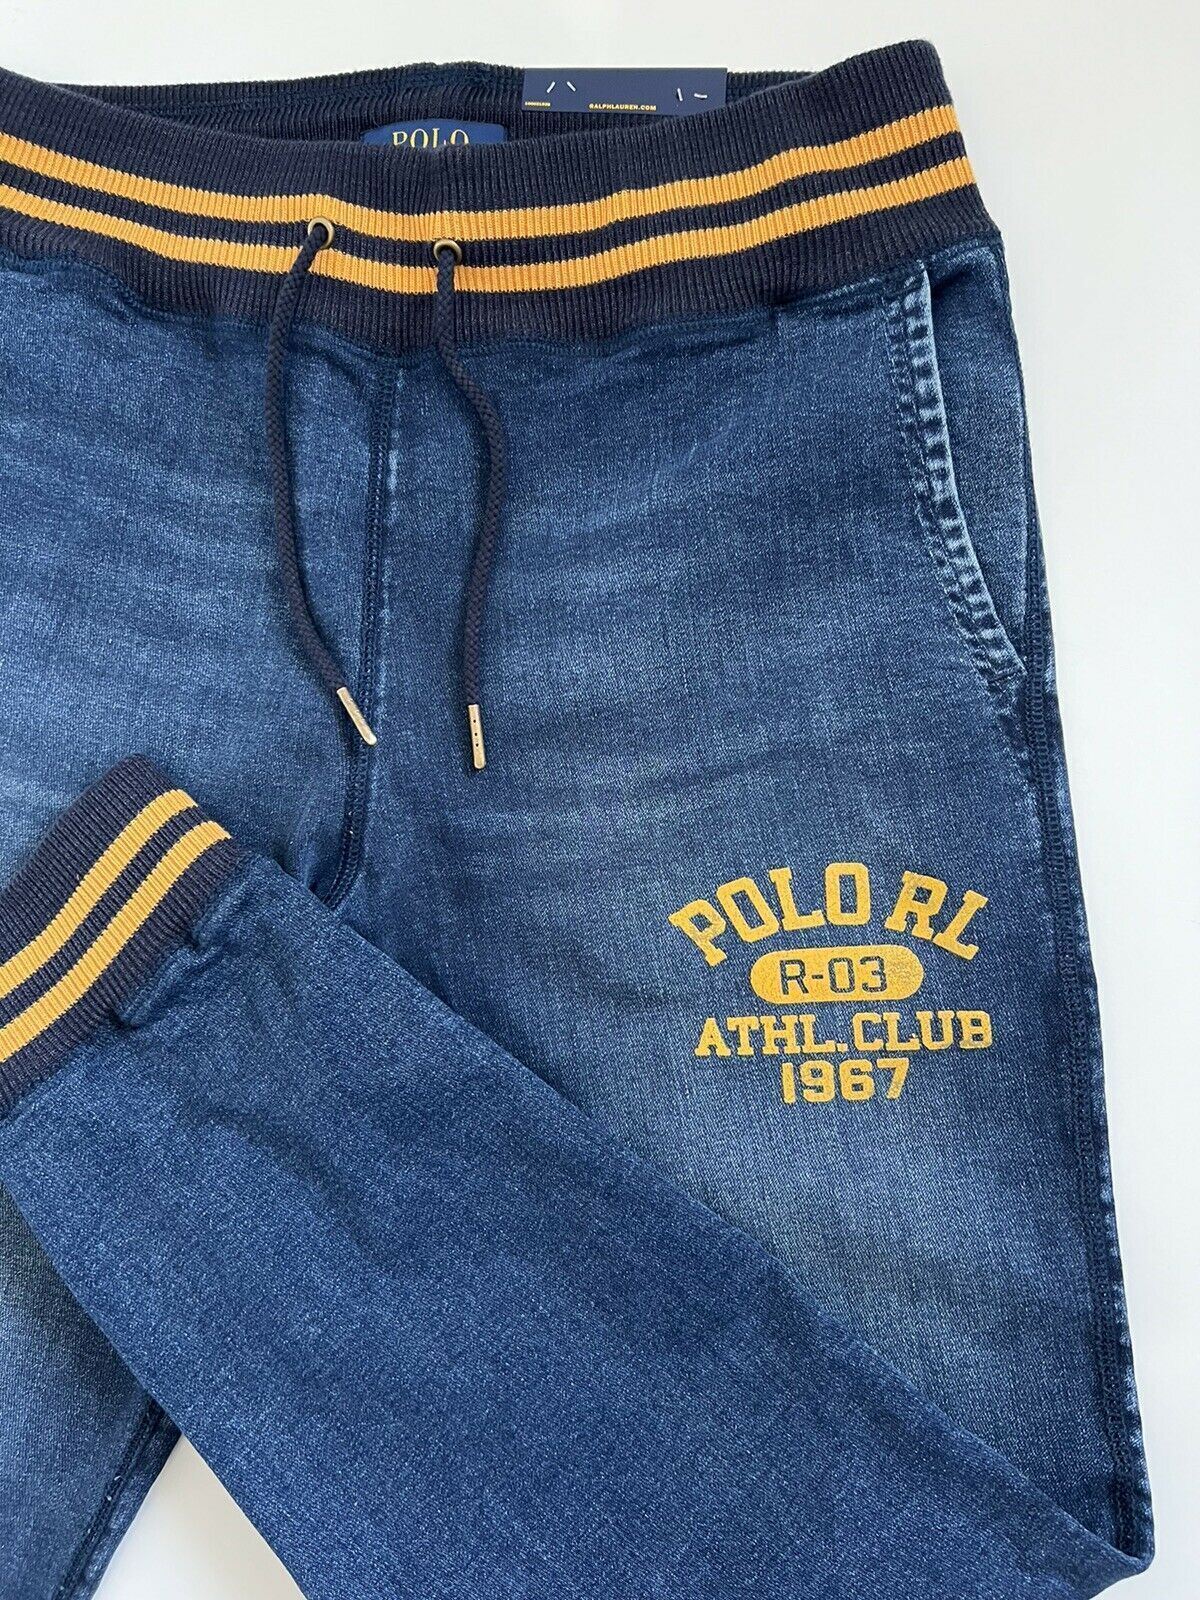 NWT $168 Polo Ralph Lauren Men's Blue Casual Pants Large